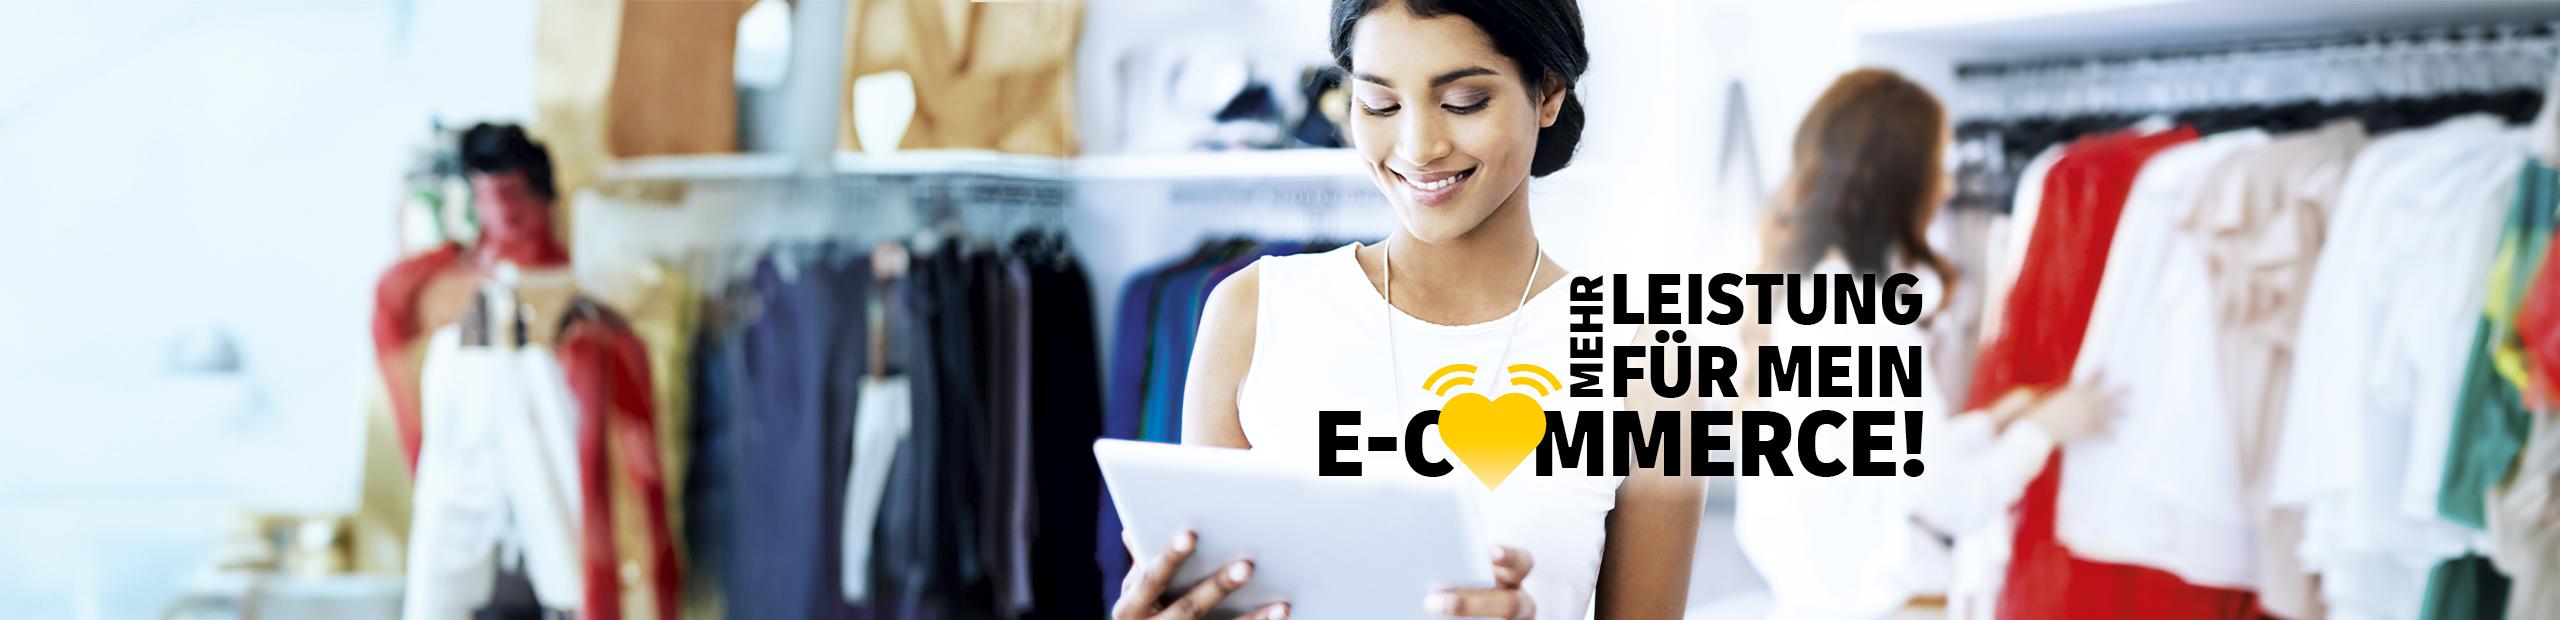 Eine lächelnde Frau steht in einem Laden mit Jeans und schaut auf ein Tablet. Der Schriftzug sagt: Mehr Leistung für mein E-Commerce.